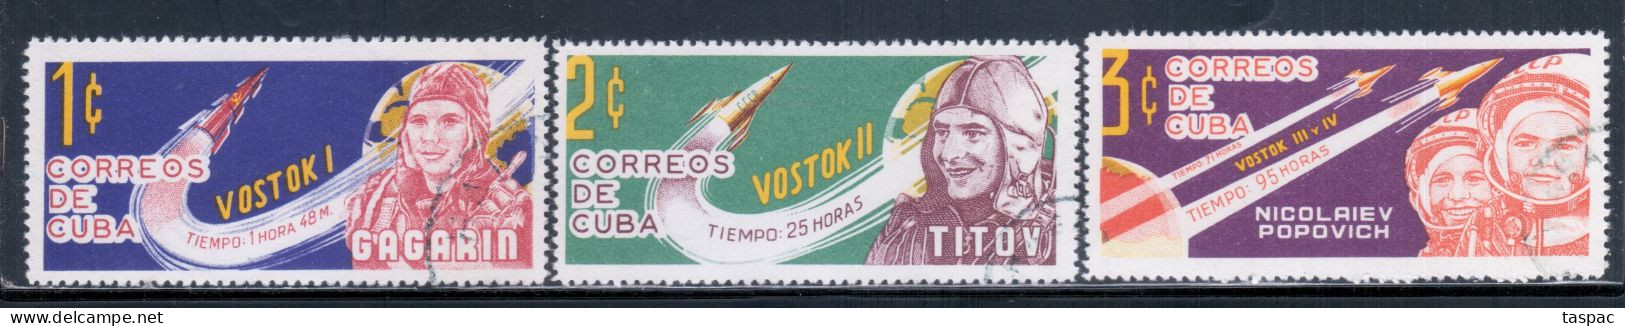 Cuba 1963-64 Mi# 835-837 Used - Soviet Space Flights / Cosmonauts (I) - Used Stamps